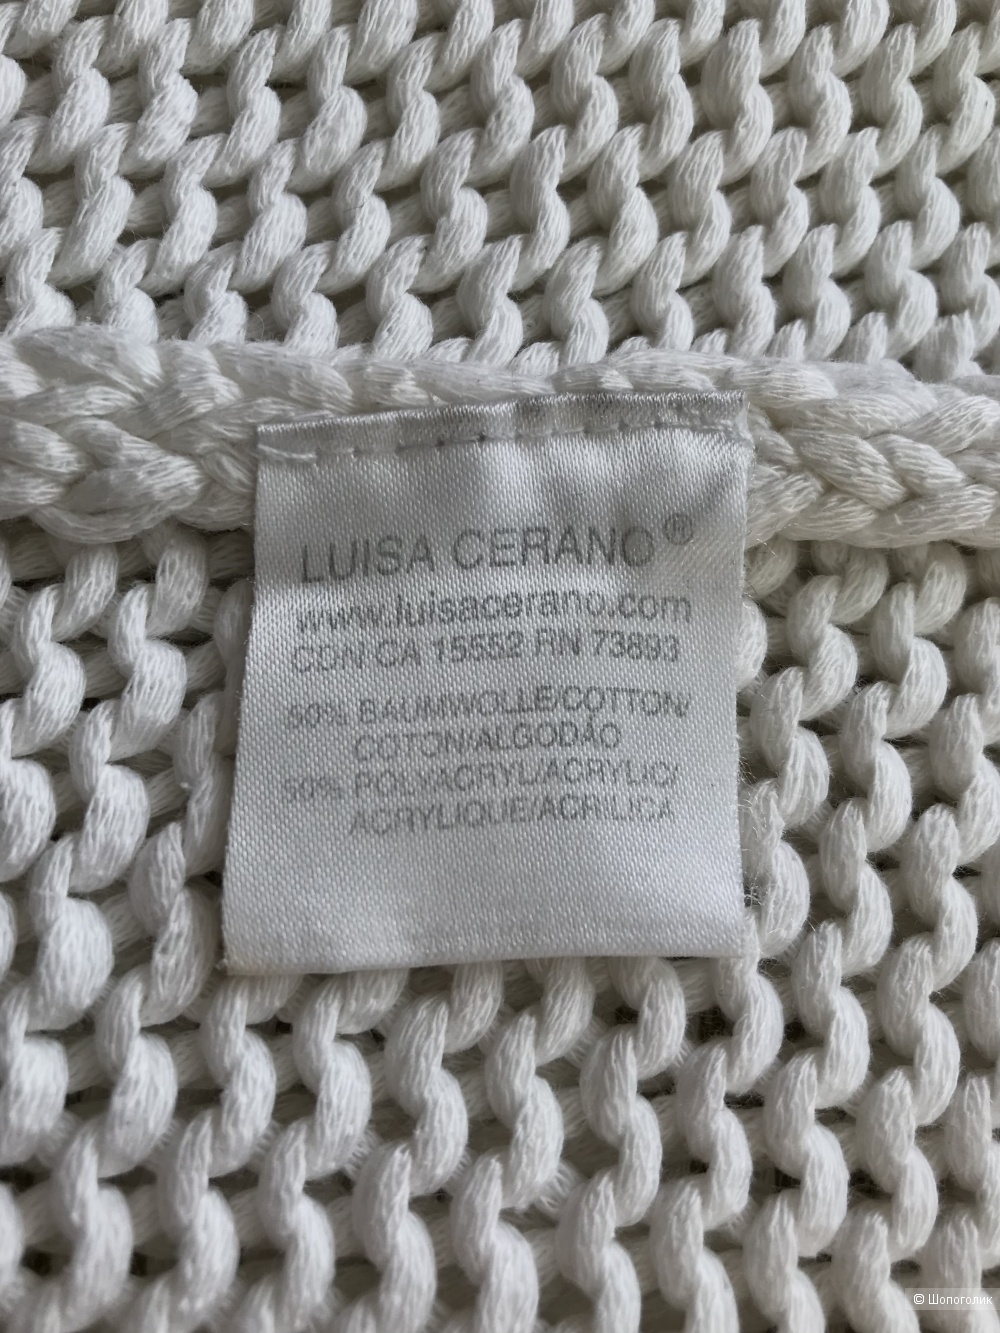 Сет: свитер Luisa Cerano и браслет. INT M (44/46 RU)